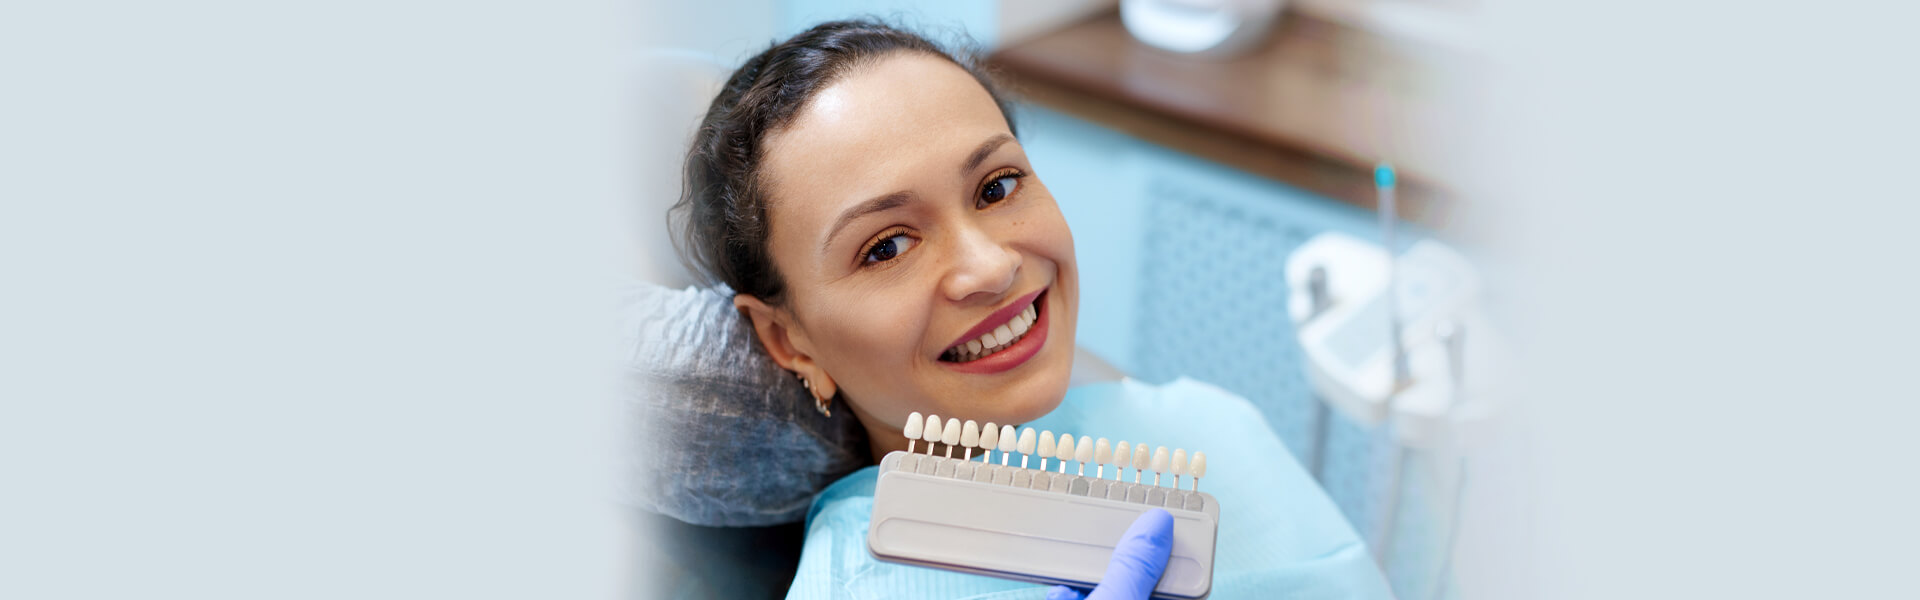 Why Consider Dental Veneers For Your Teeth?